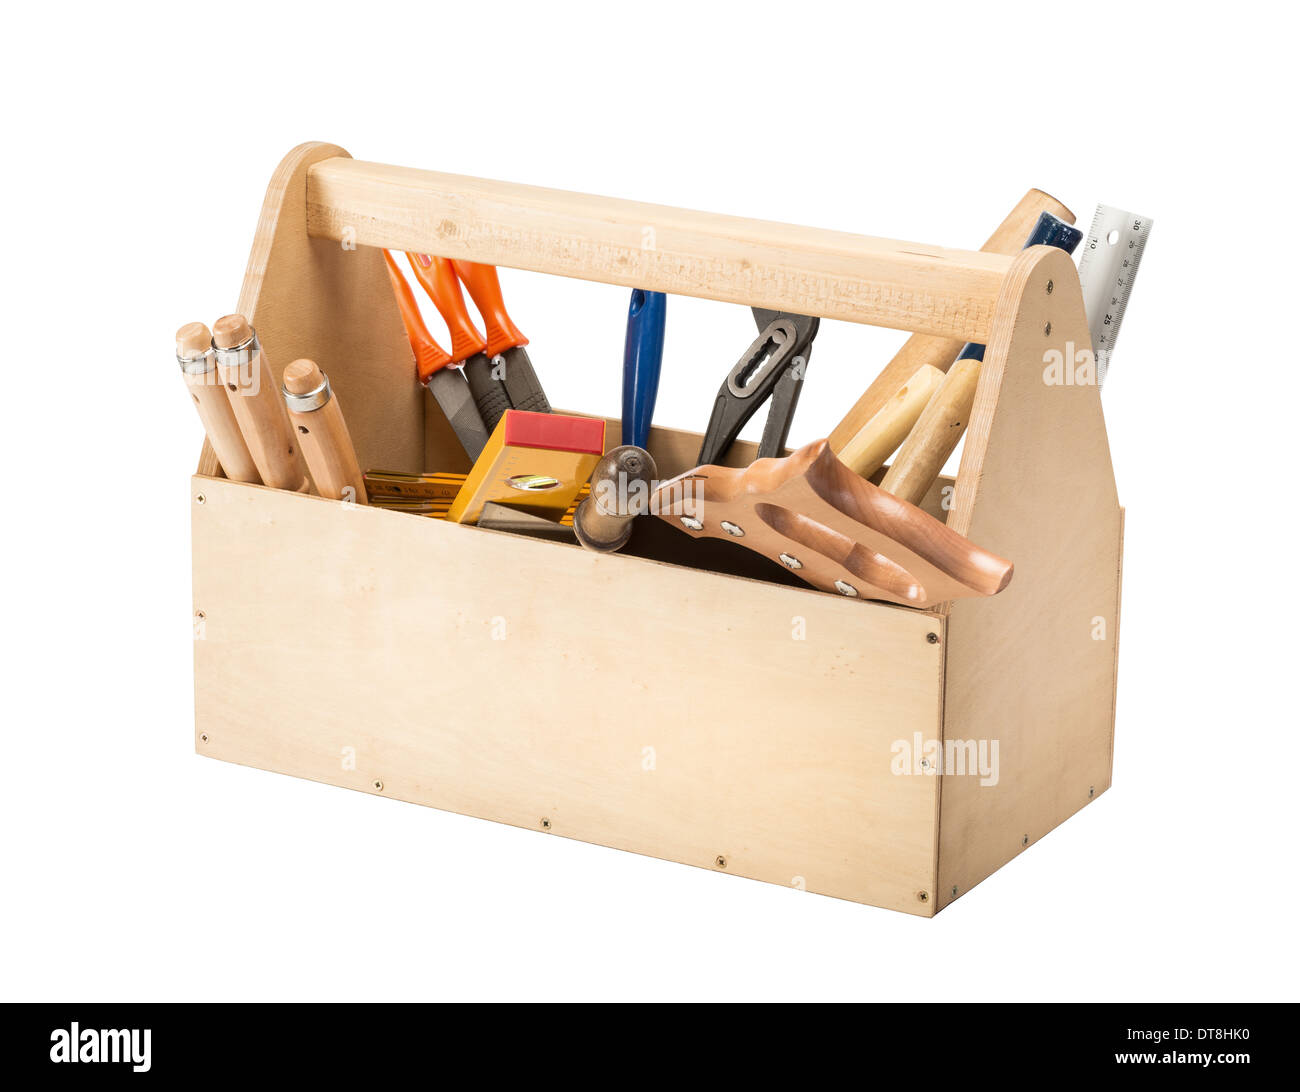 Holz Werkzeugkasten mit Werkzeugen isoliert auf weiss Stockfoto